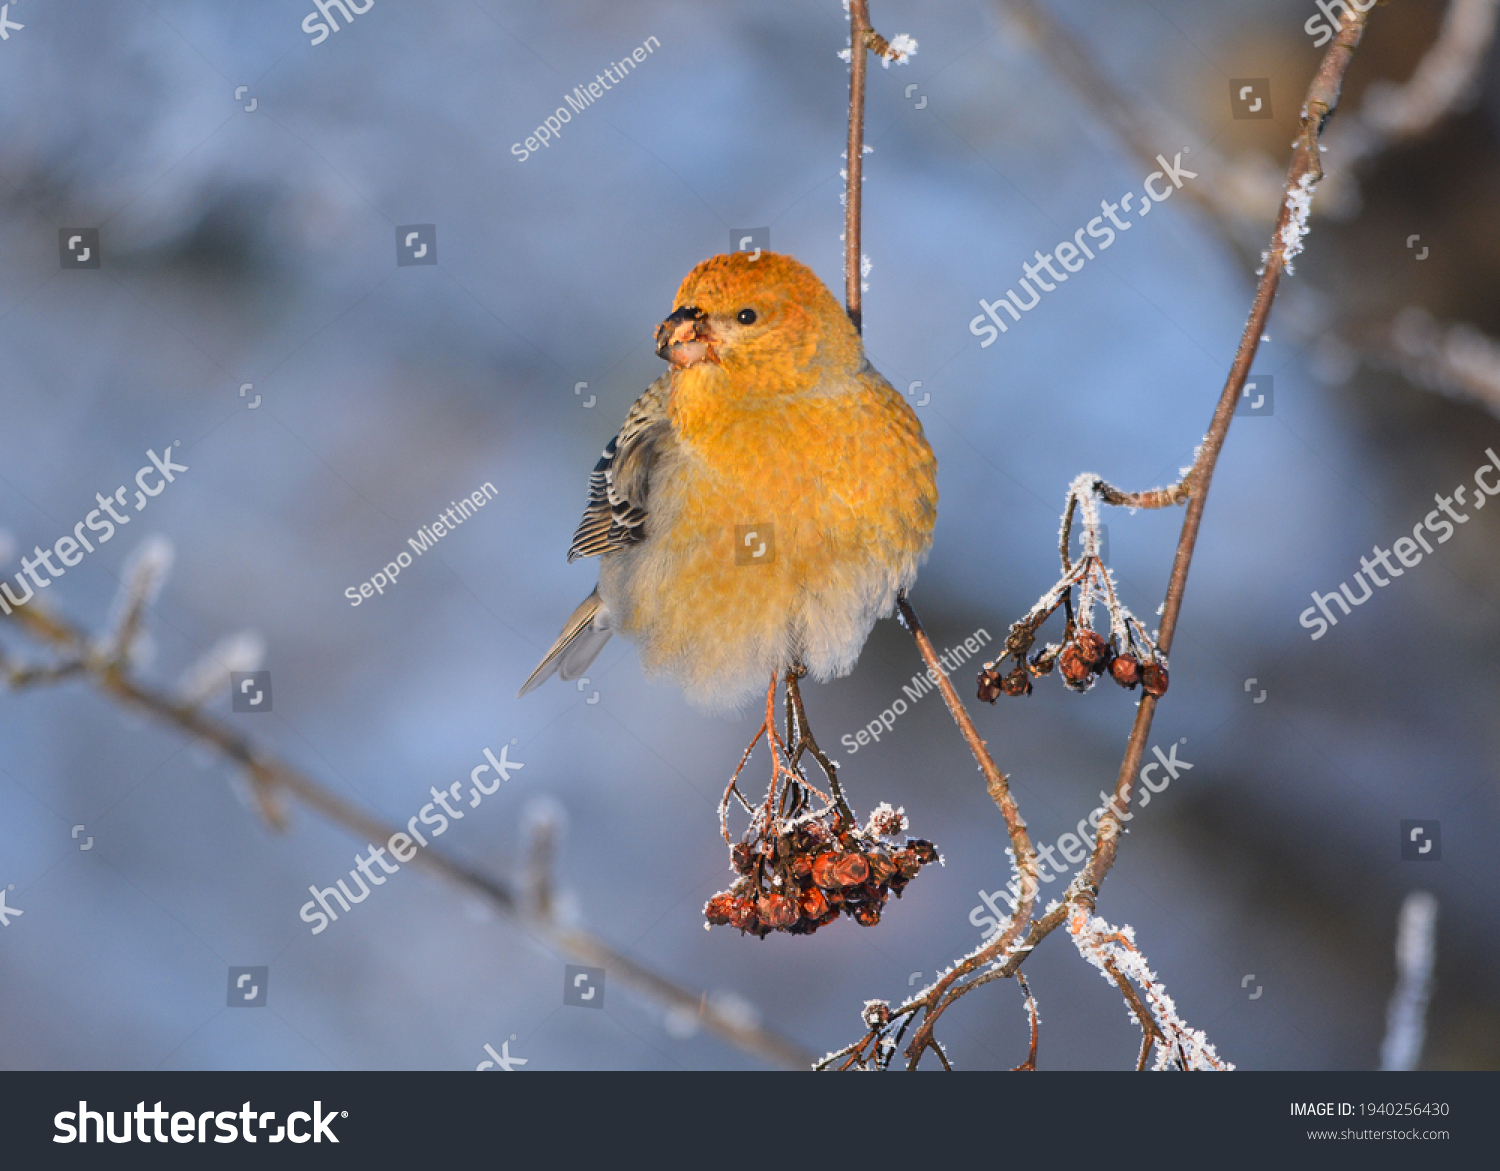 Pine grosbeak (Pinicola enucleator) eating berries in the winter #1940256430